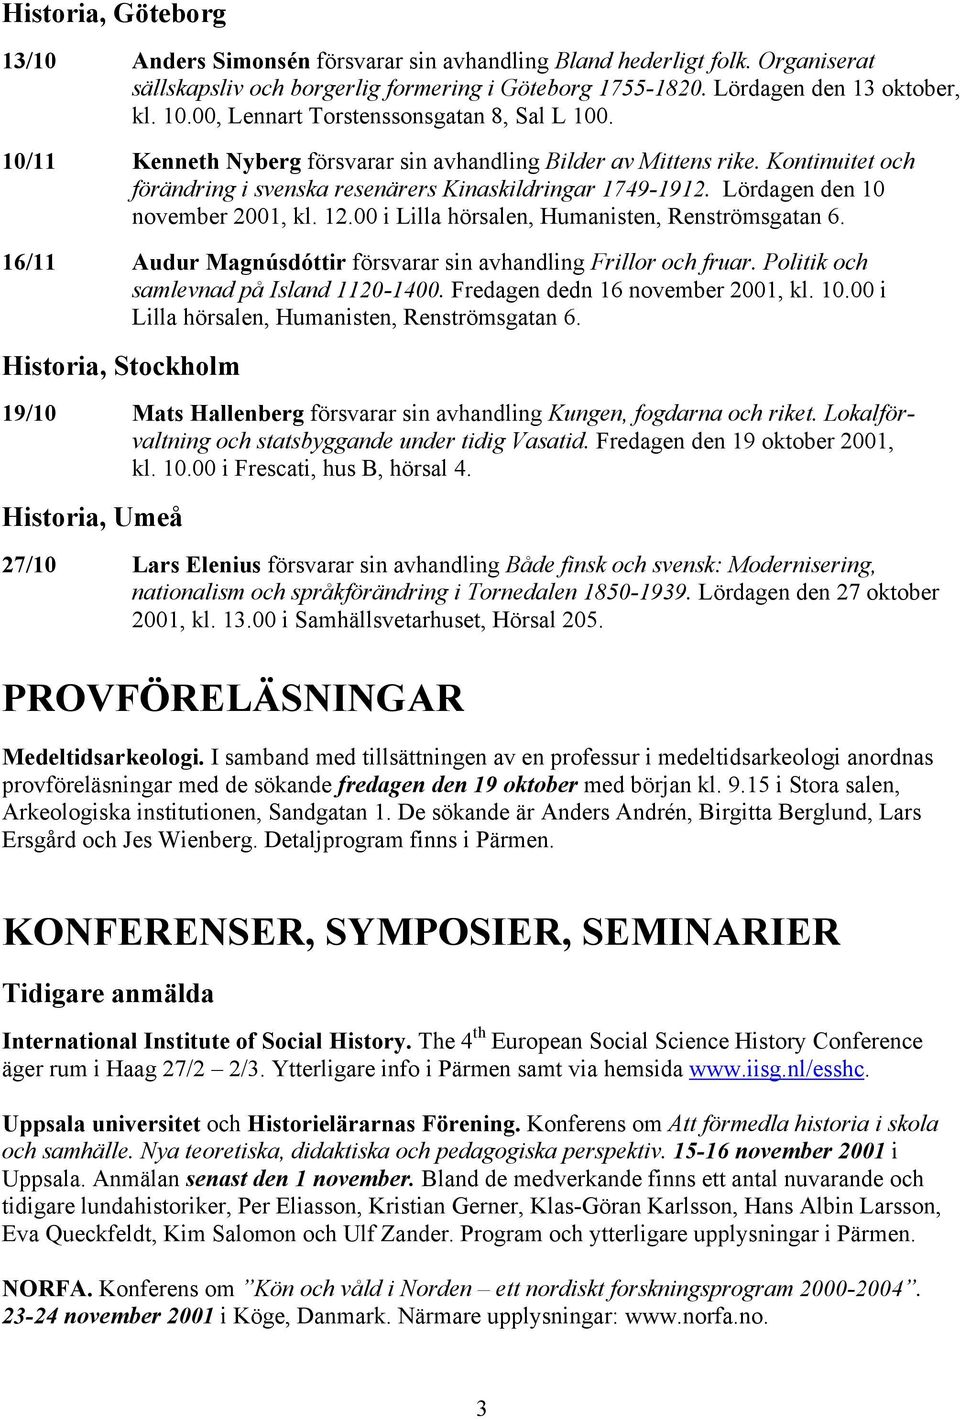 Lördagen den 10 november 2001, kl. 12.00 i Lilla hörsalen, Humanisten, Renströmsgatan 6. 16/11 Audur Magnúsdóttir försvarar sin avhandling Frillor och fruar. Politik och samlevnad på Island 1120-1400.